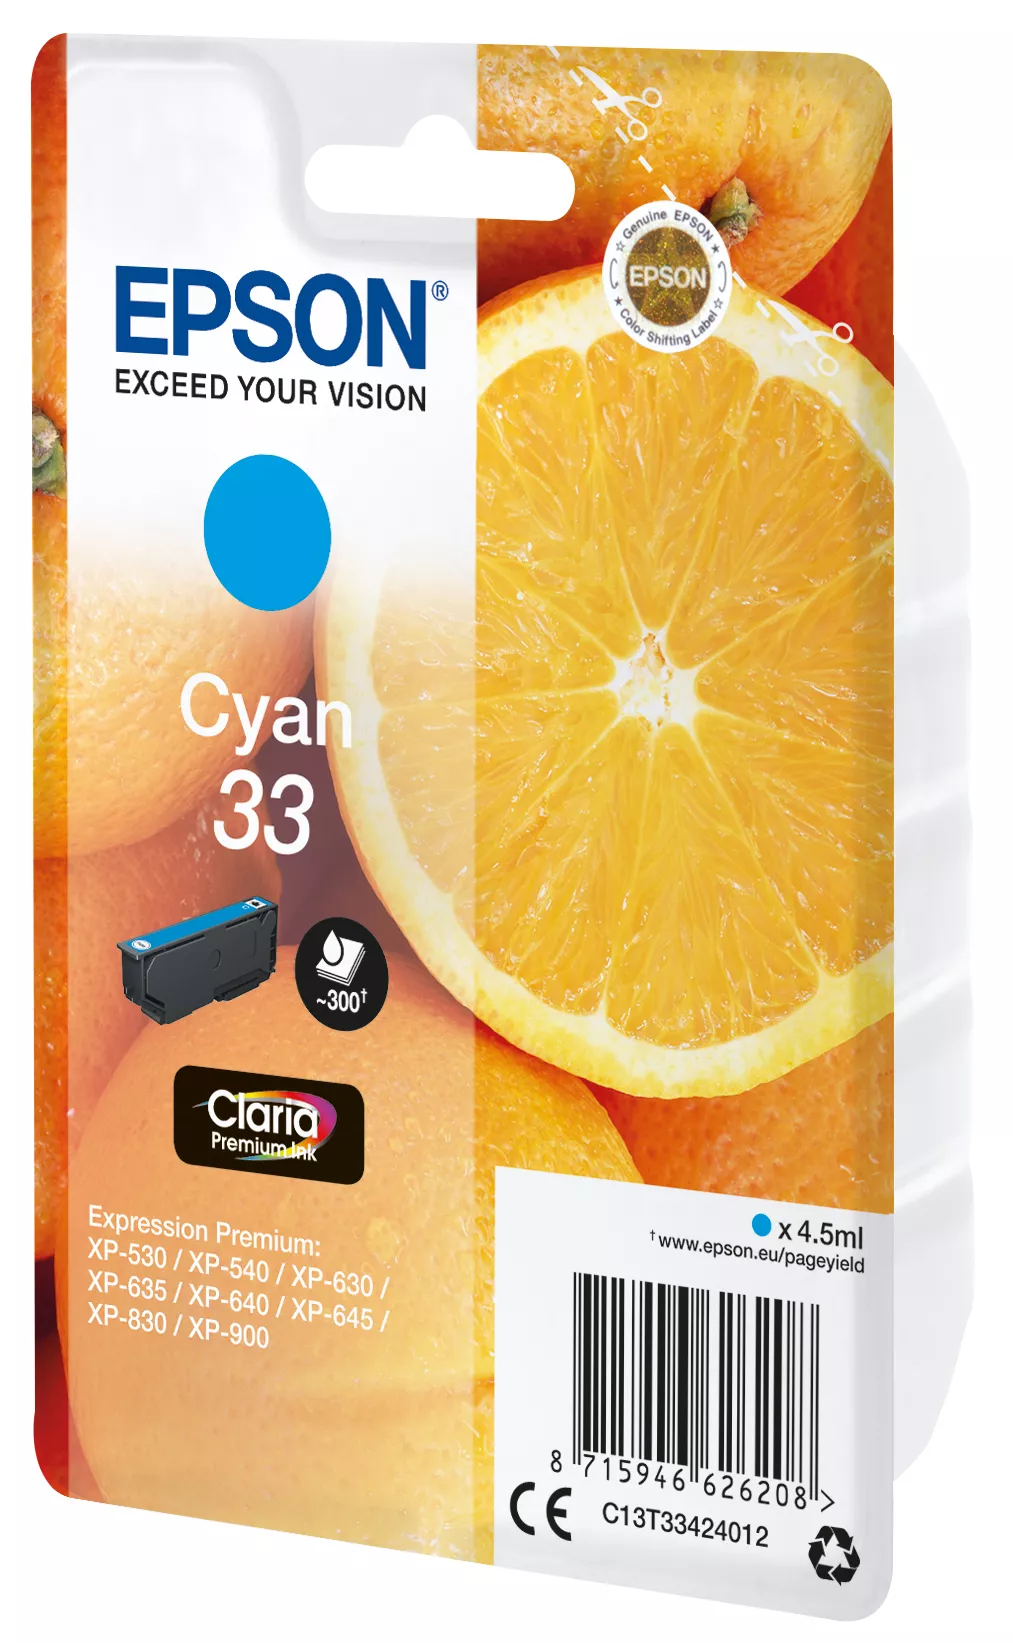 Vente EPSON Cartouche Oranges Encre Claria Premium Cyan Epson au meilleur prix - visuel 2